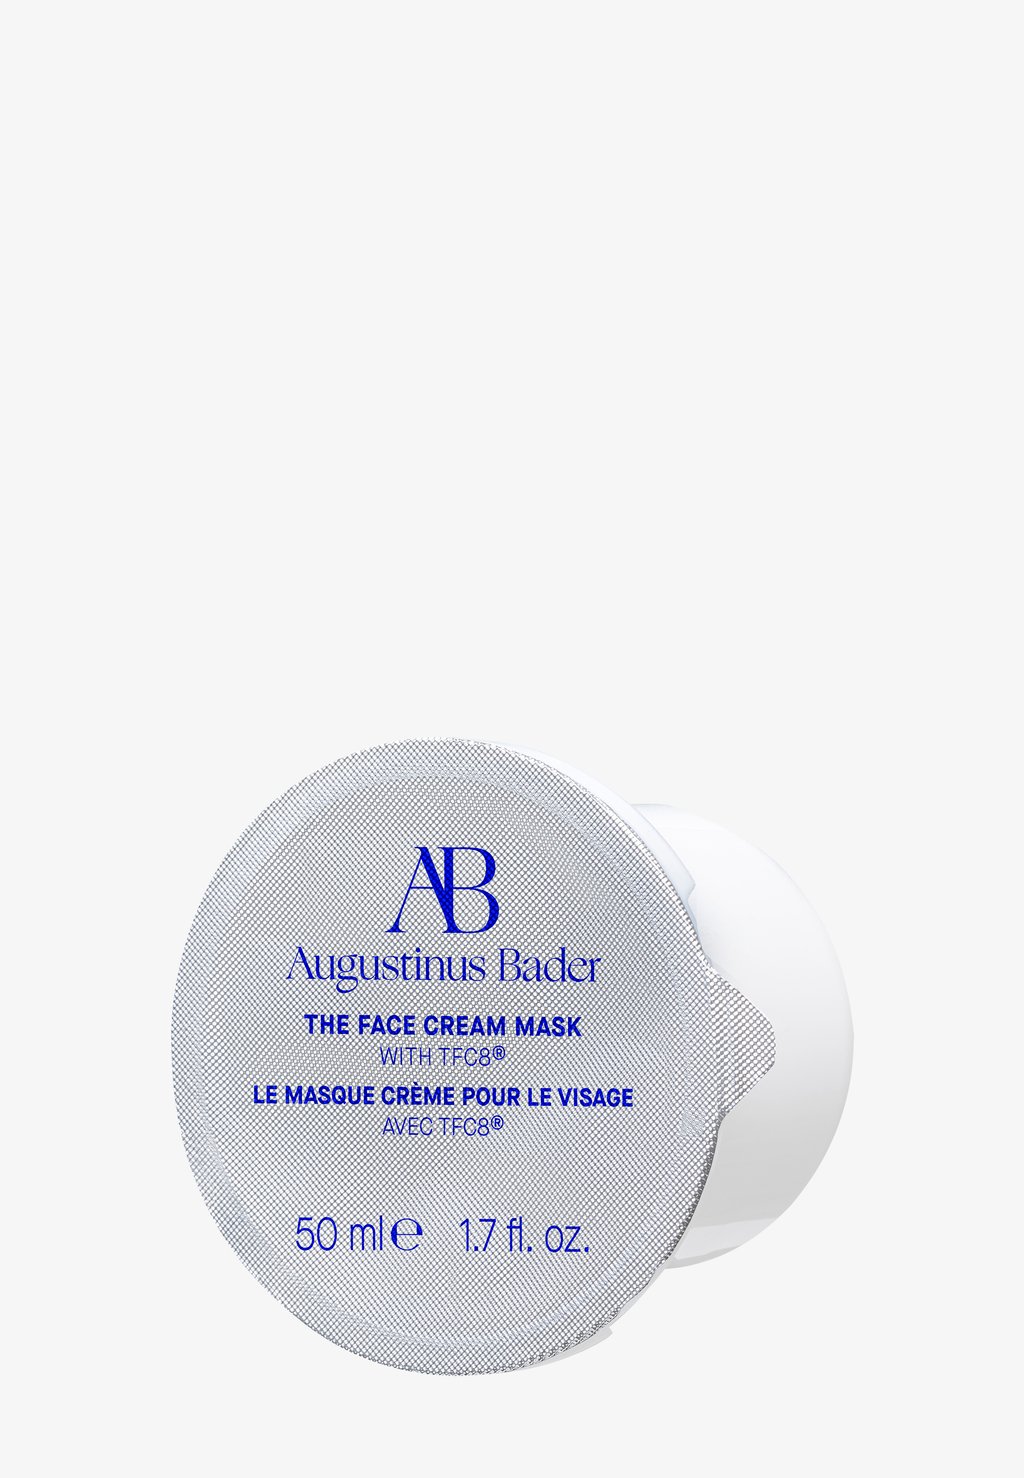 Дневной крем The Face Cream Mask Refill Augustinus Bader, синий сменный блок крем маски для лица augustinus bader the face cream mask refill 50 мл